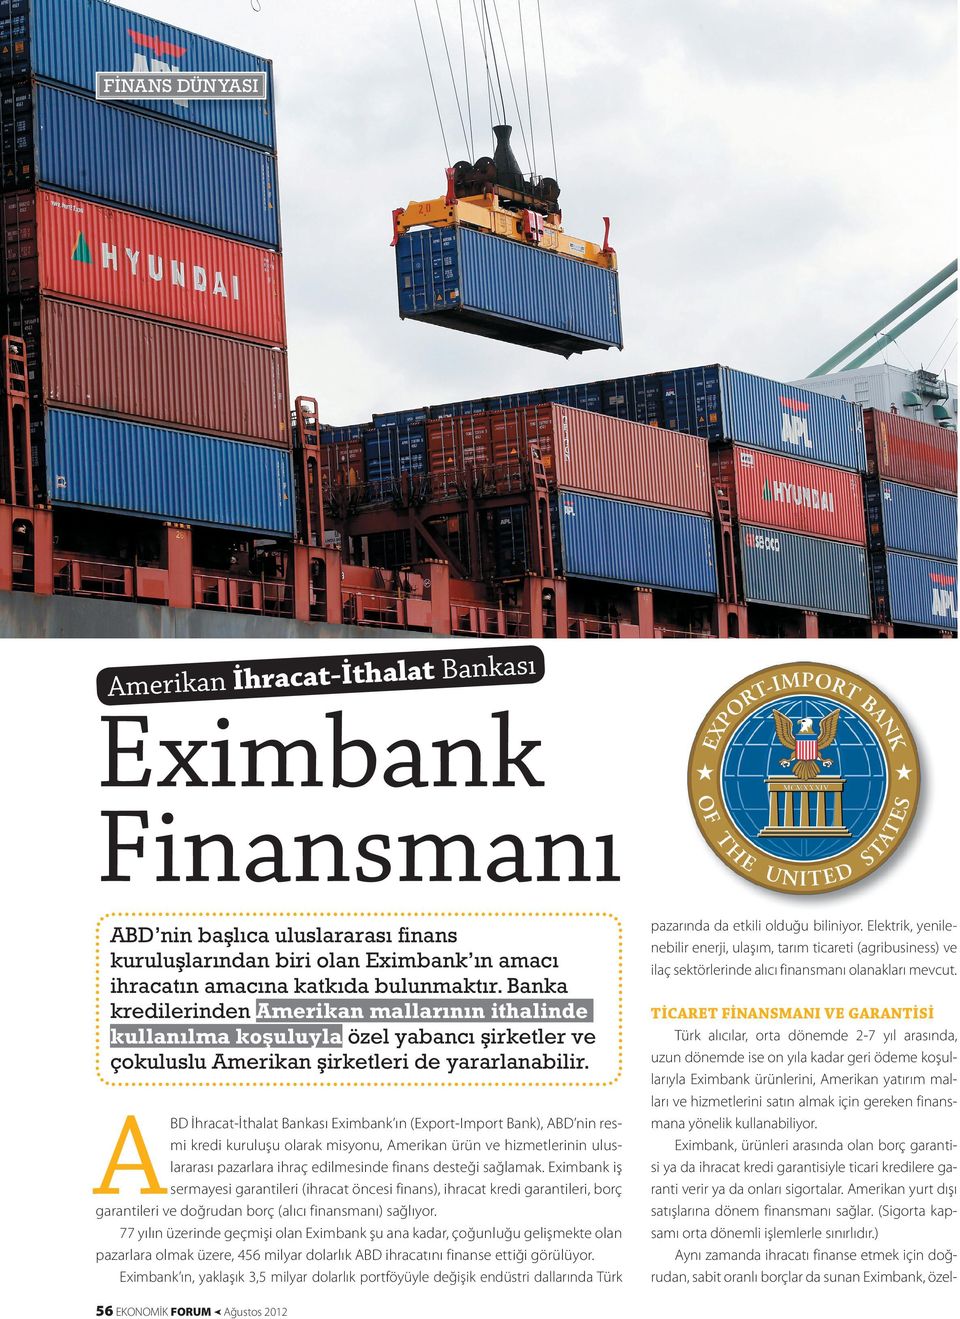 A BD İhracat-İthalat Bankası Eximbank ın (Export-Import Bank), ABD nin resmi kredi kuruluşu olarak misyonu, Amerikan ürün ve hizmetlerinin uluslararası pazarlara ihraç edilmesinde finans desteği